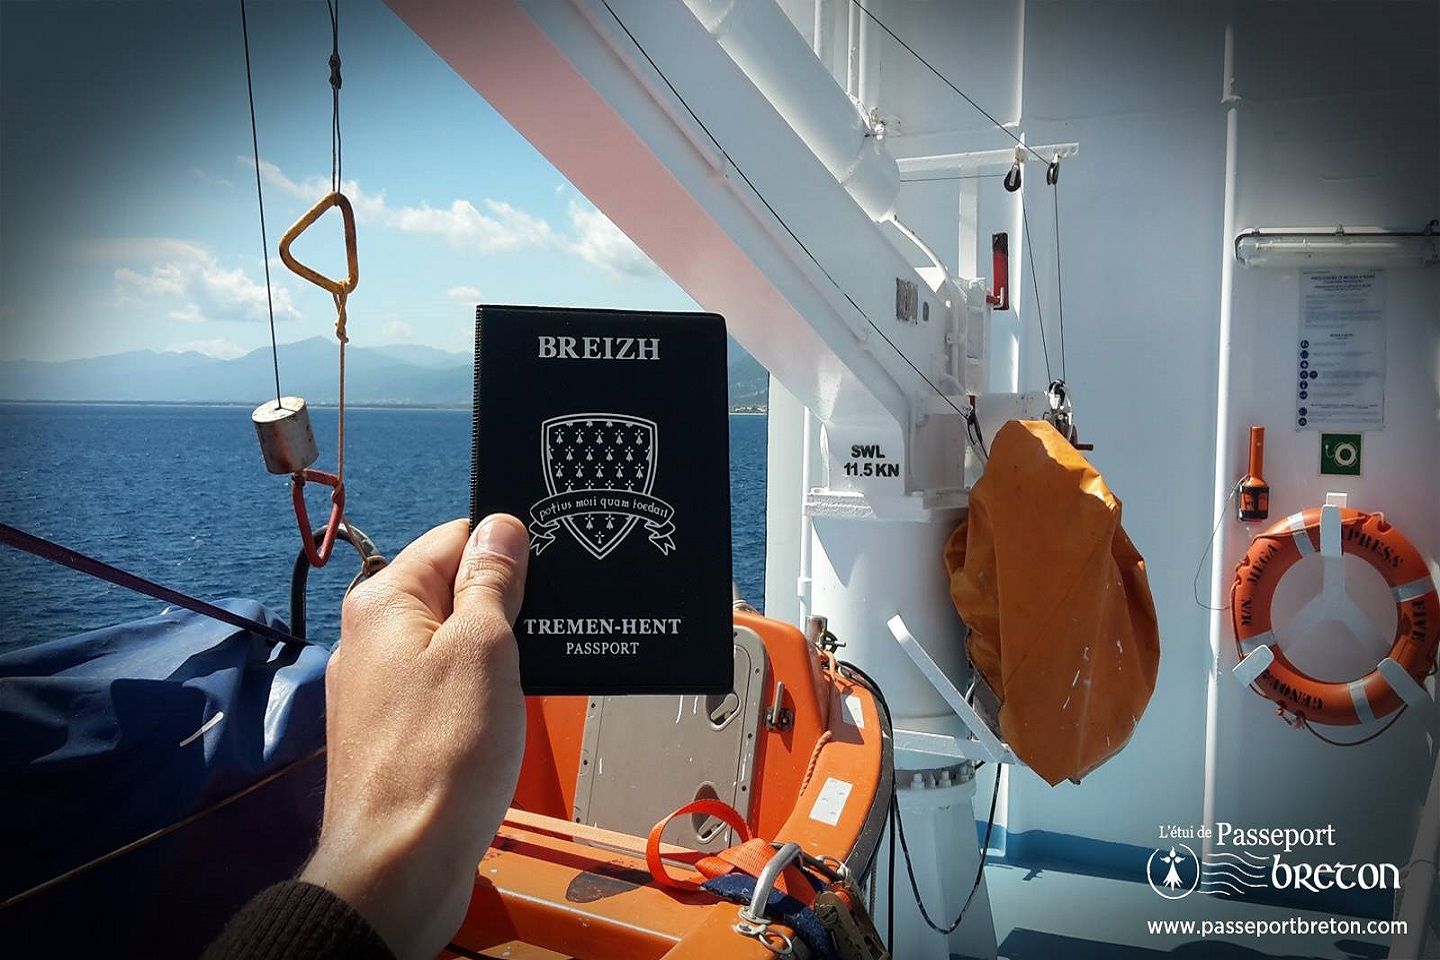 Le passeport breton : un incontournable à avoir dans sa valise !